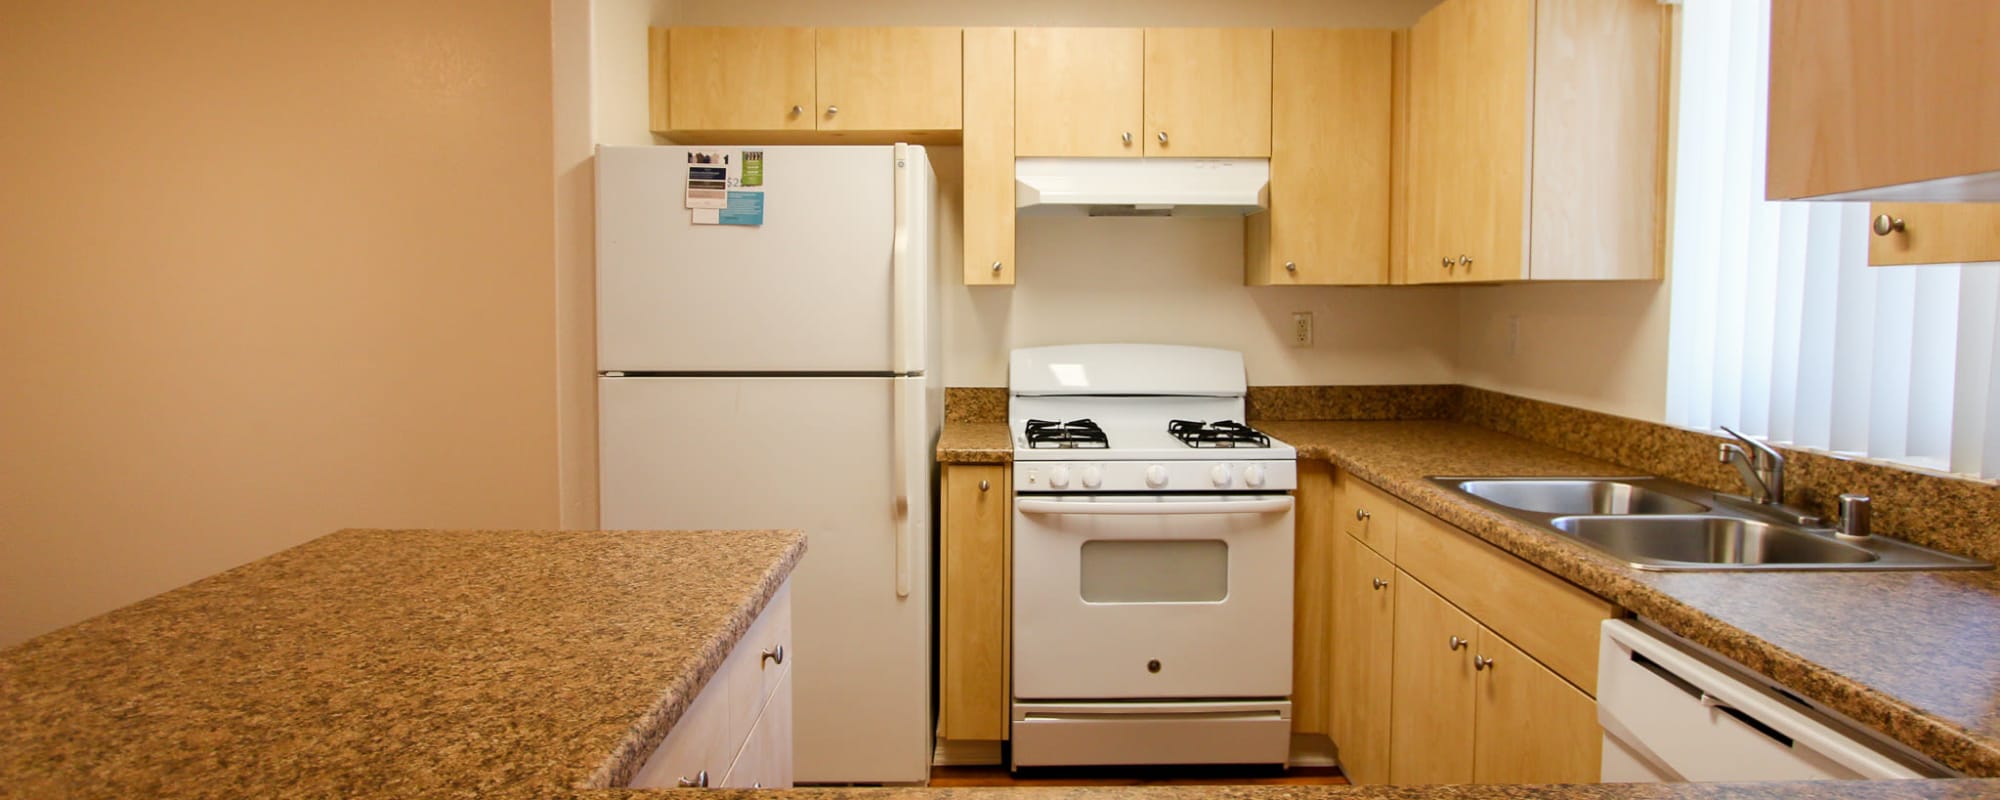 A kitchen in a home at Vista Ridge in Vista, California